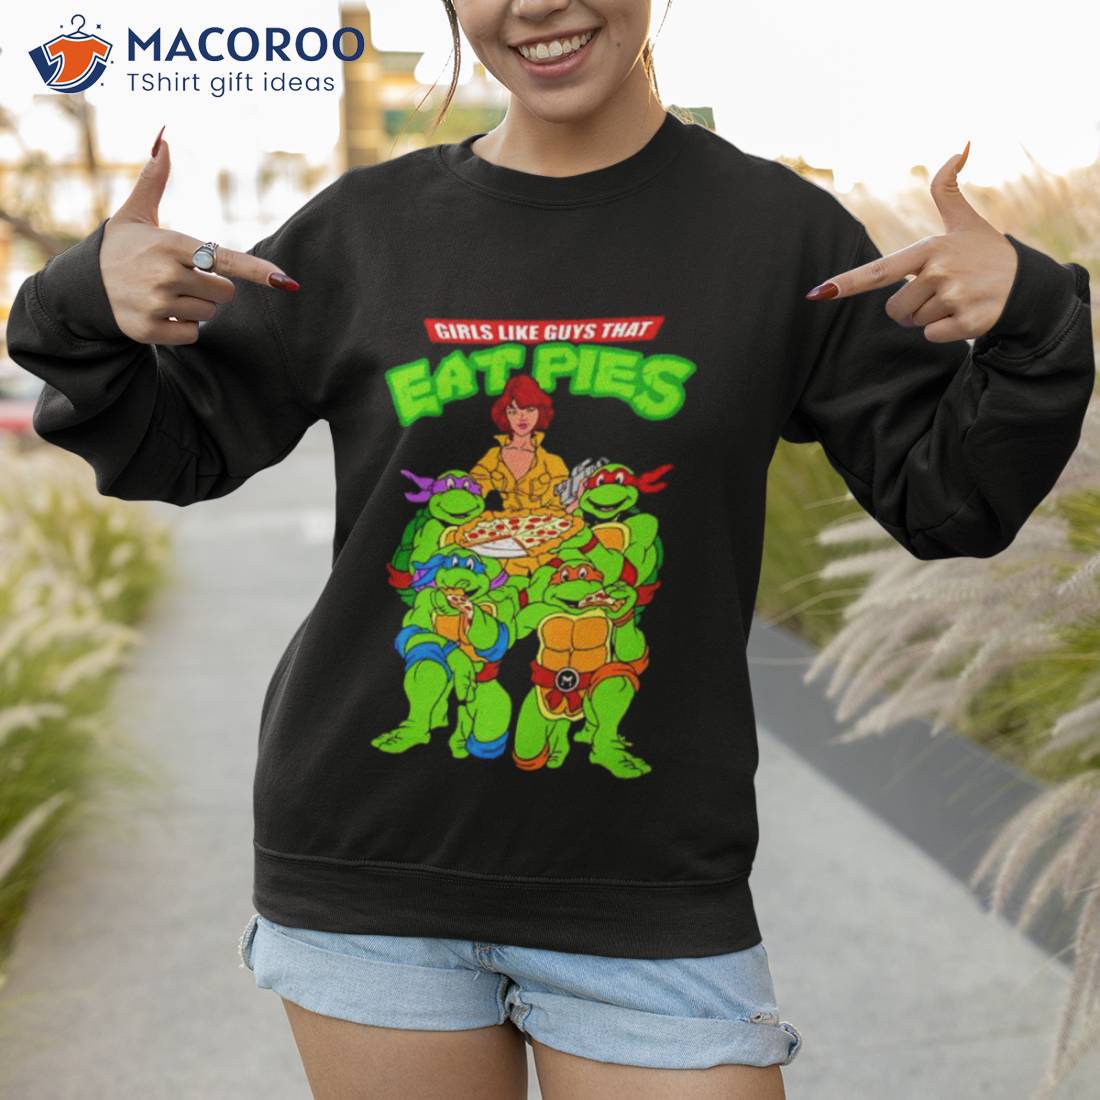 https://images.macoroo.com/wp-content/uploads/2023/06/ninja-turtles-girls-like-guys-that-eat-pies-shirt-sweatshirt.jpg